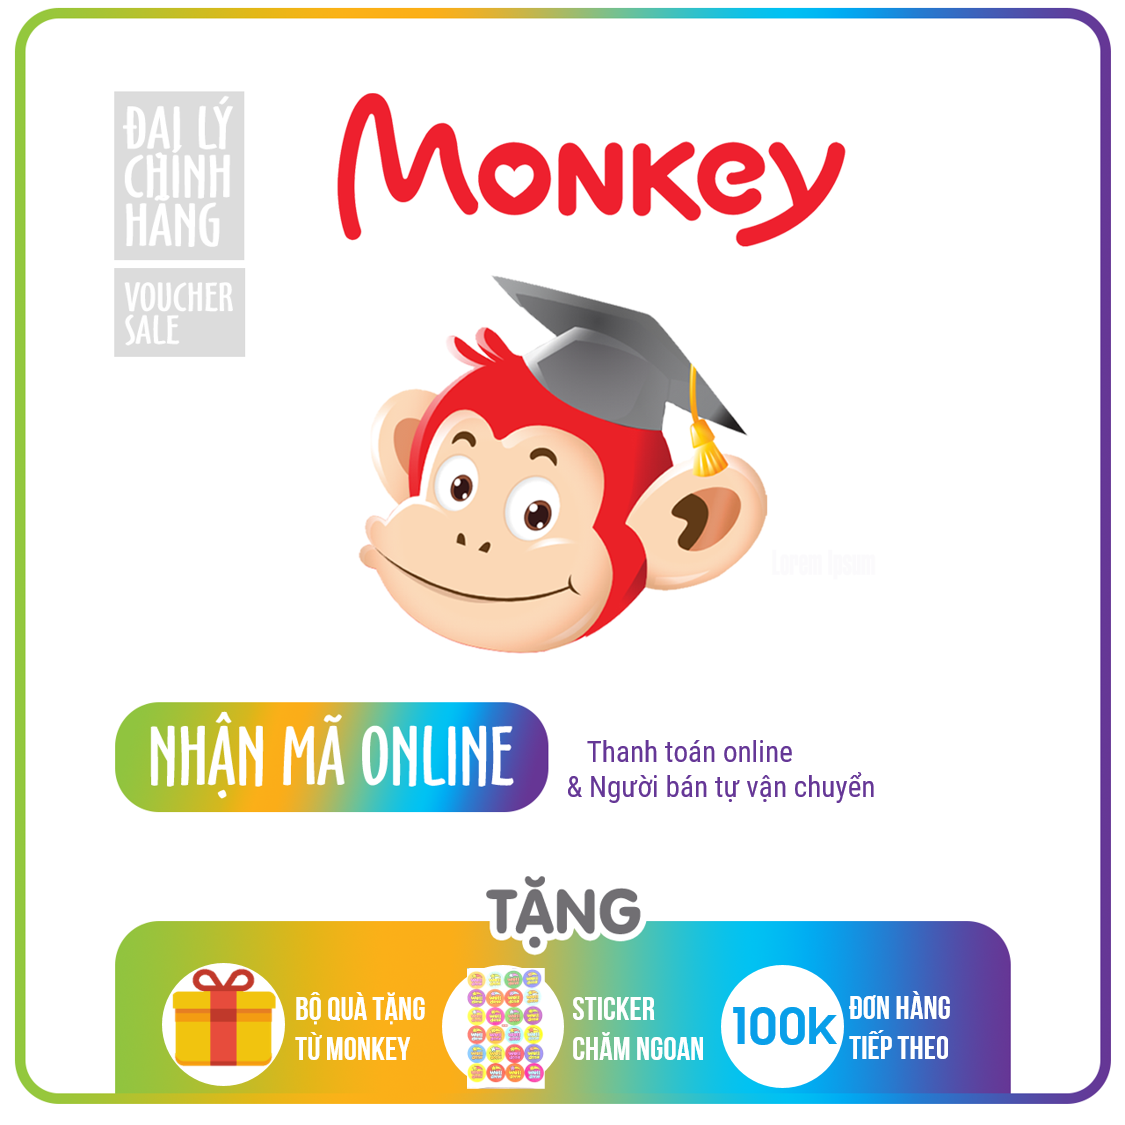 Phần mềm giáo dục thông minh Monkey cho trẻ em từ 0 đến 14 tuổi – (Monkey Junior, Monkey Stories, Monkey Math, Vmonkey) – bảo hành chĩnh hãng